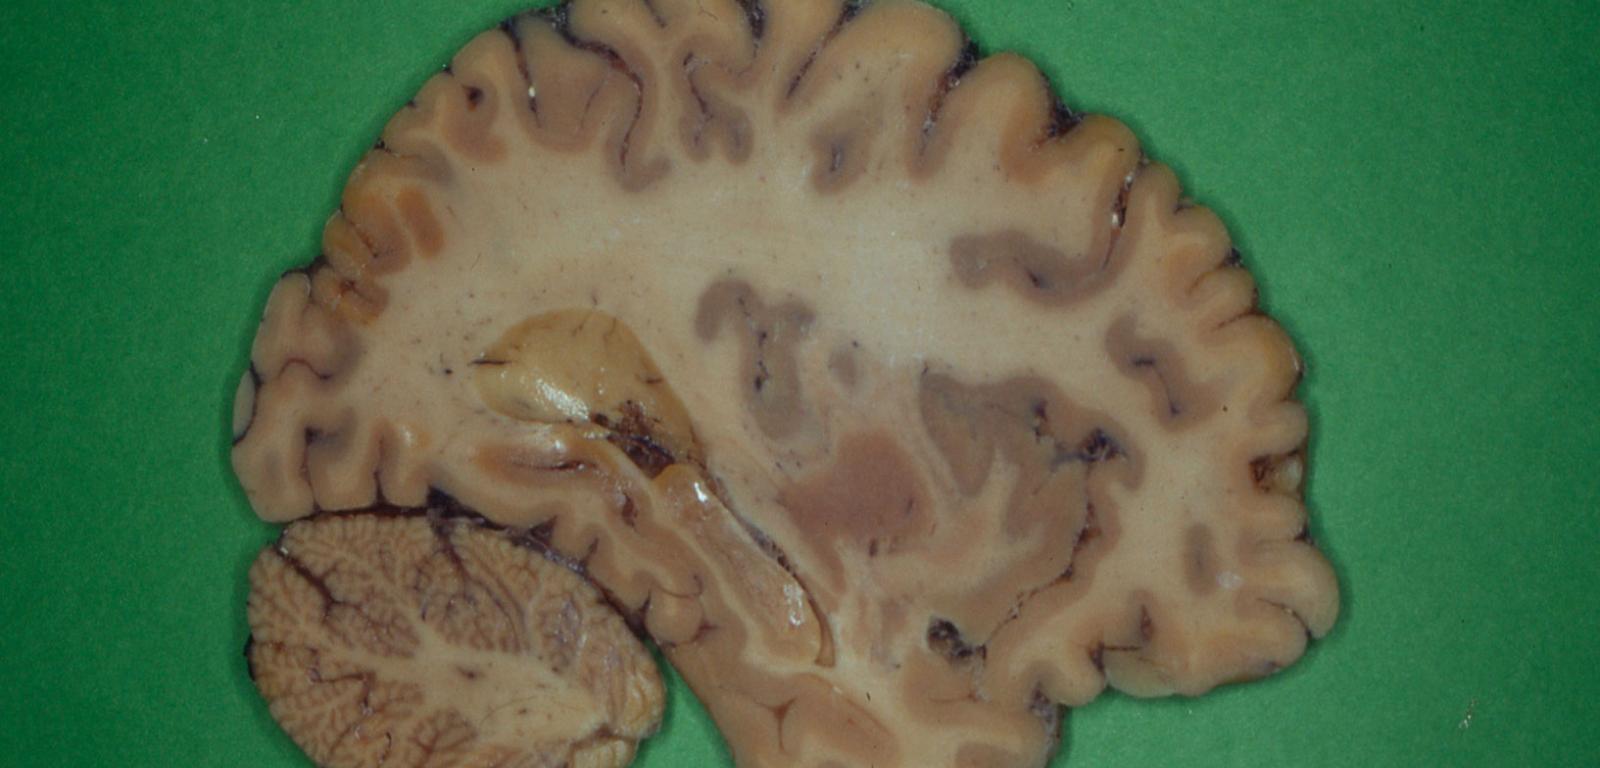 Skrawek ludzkiego mózgu do obserwacji mikroskopowej.